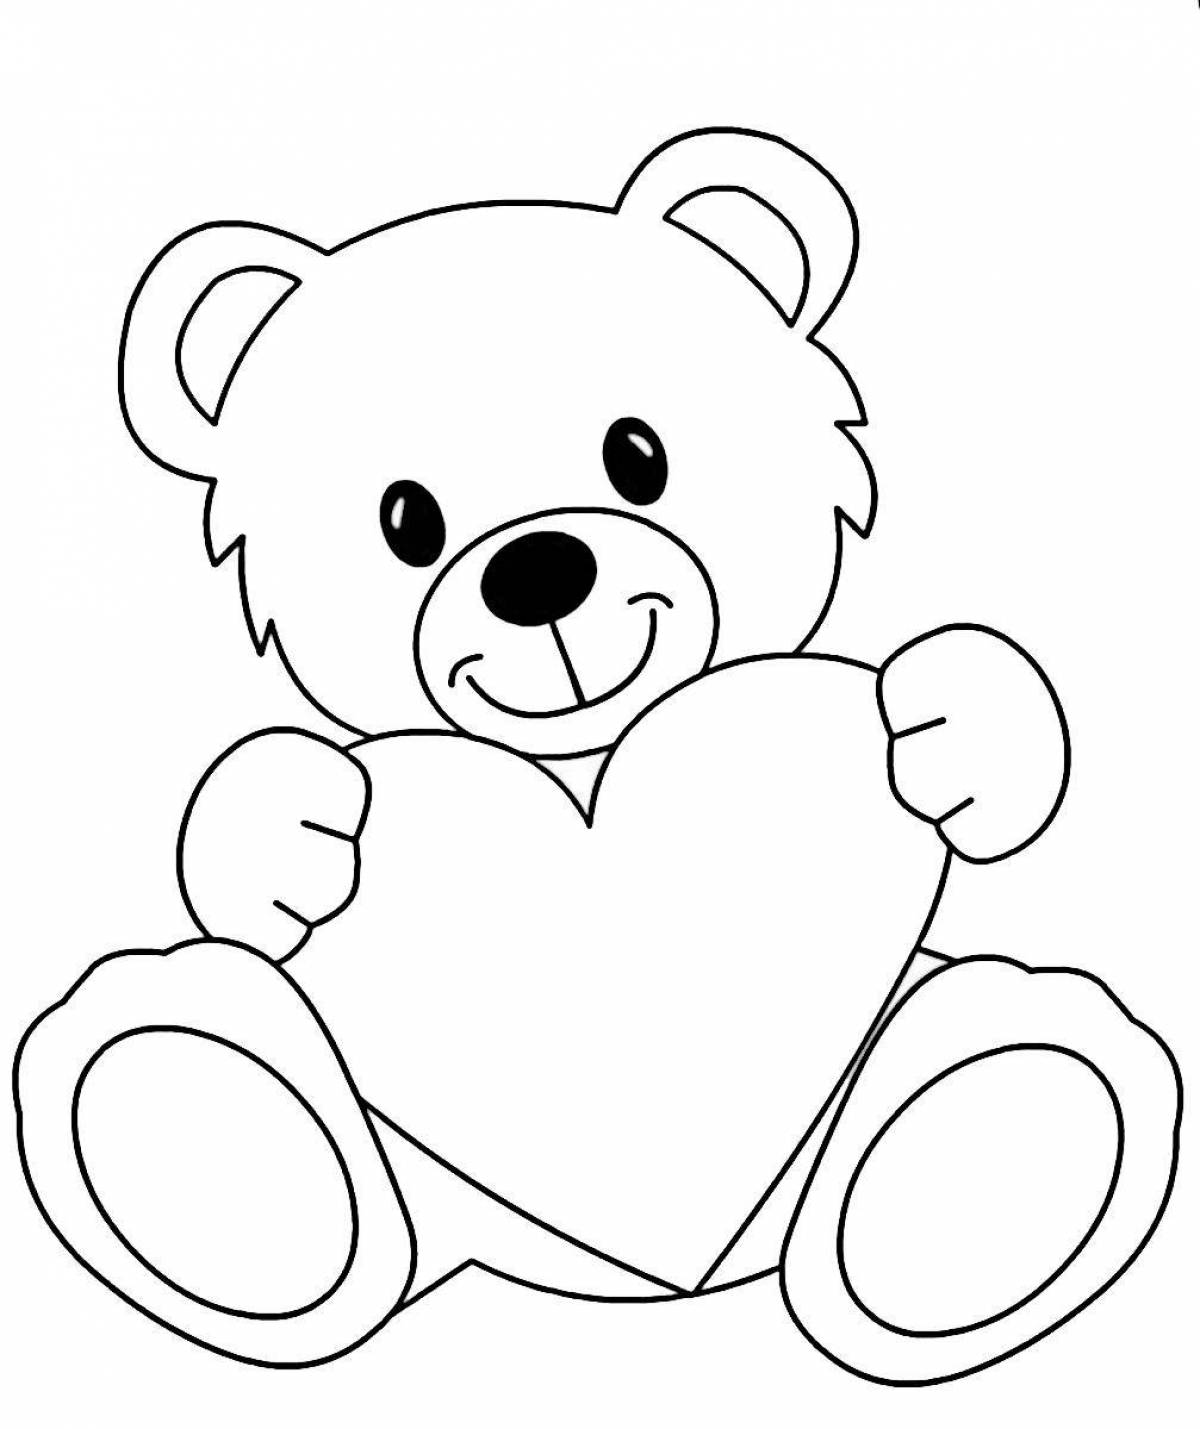 Bear with heart #2